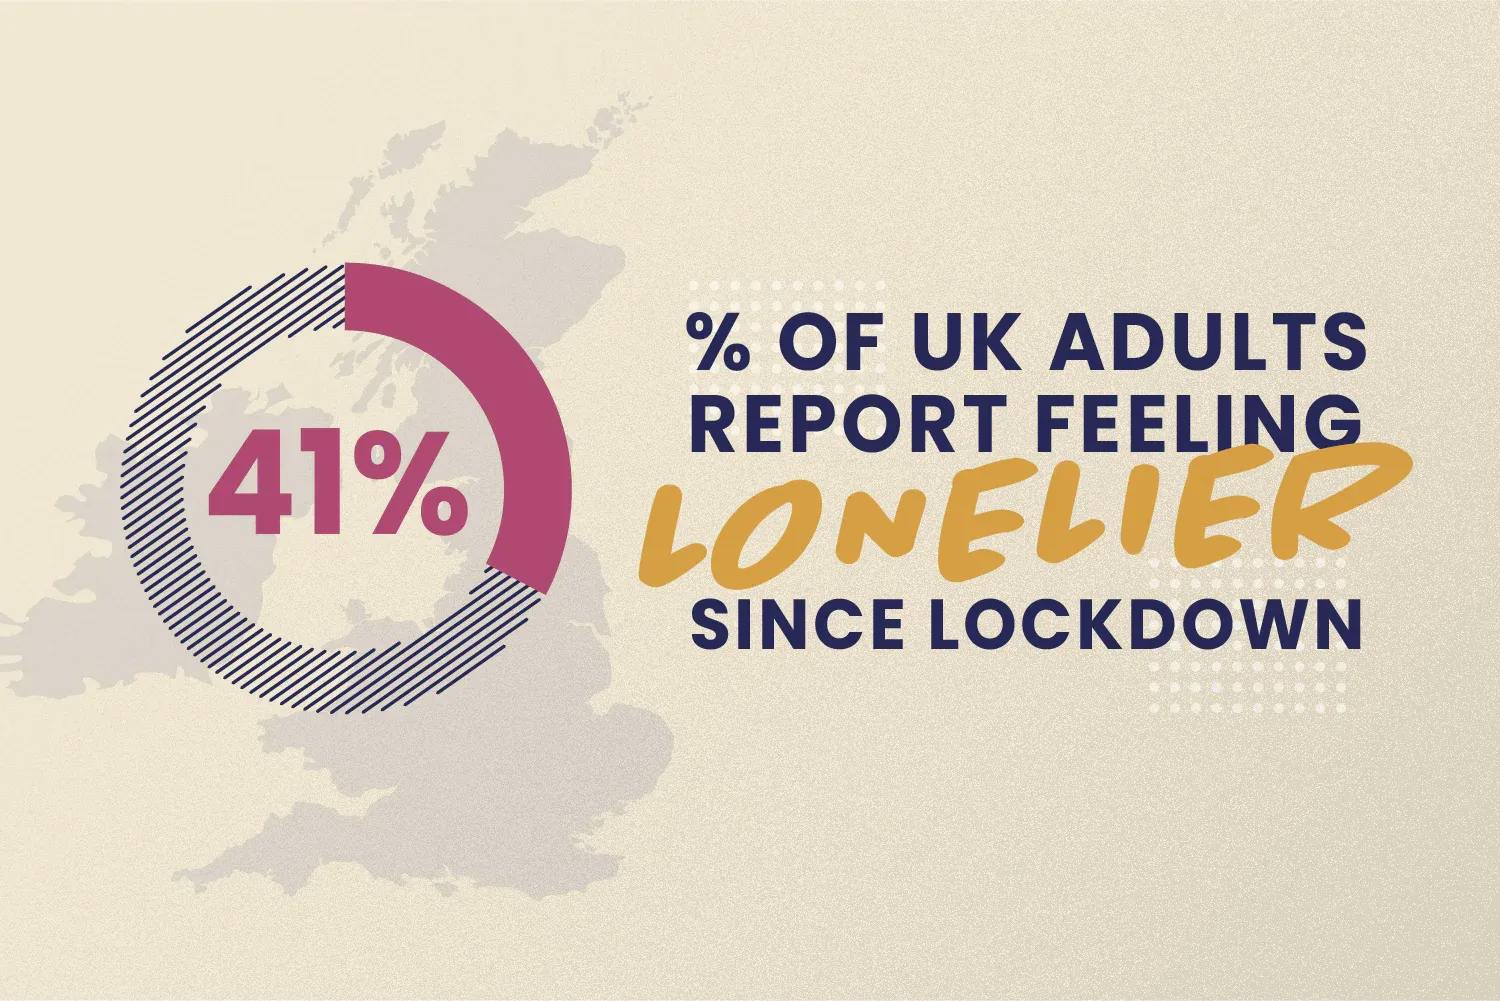 41% of UK adults report feeling lonelier since lockdown